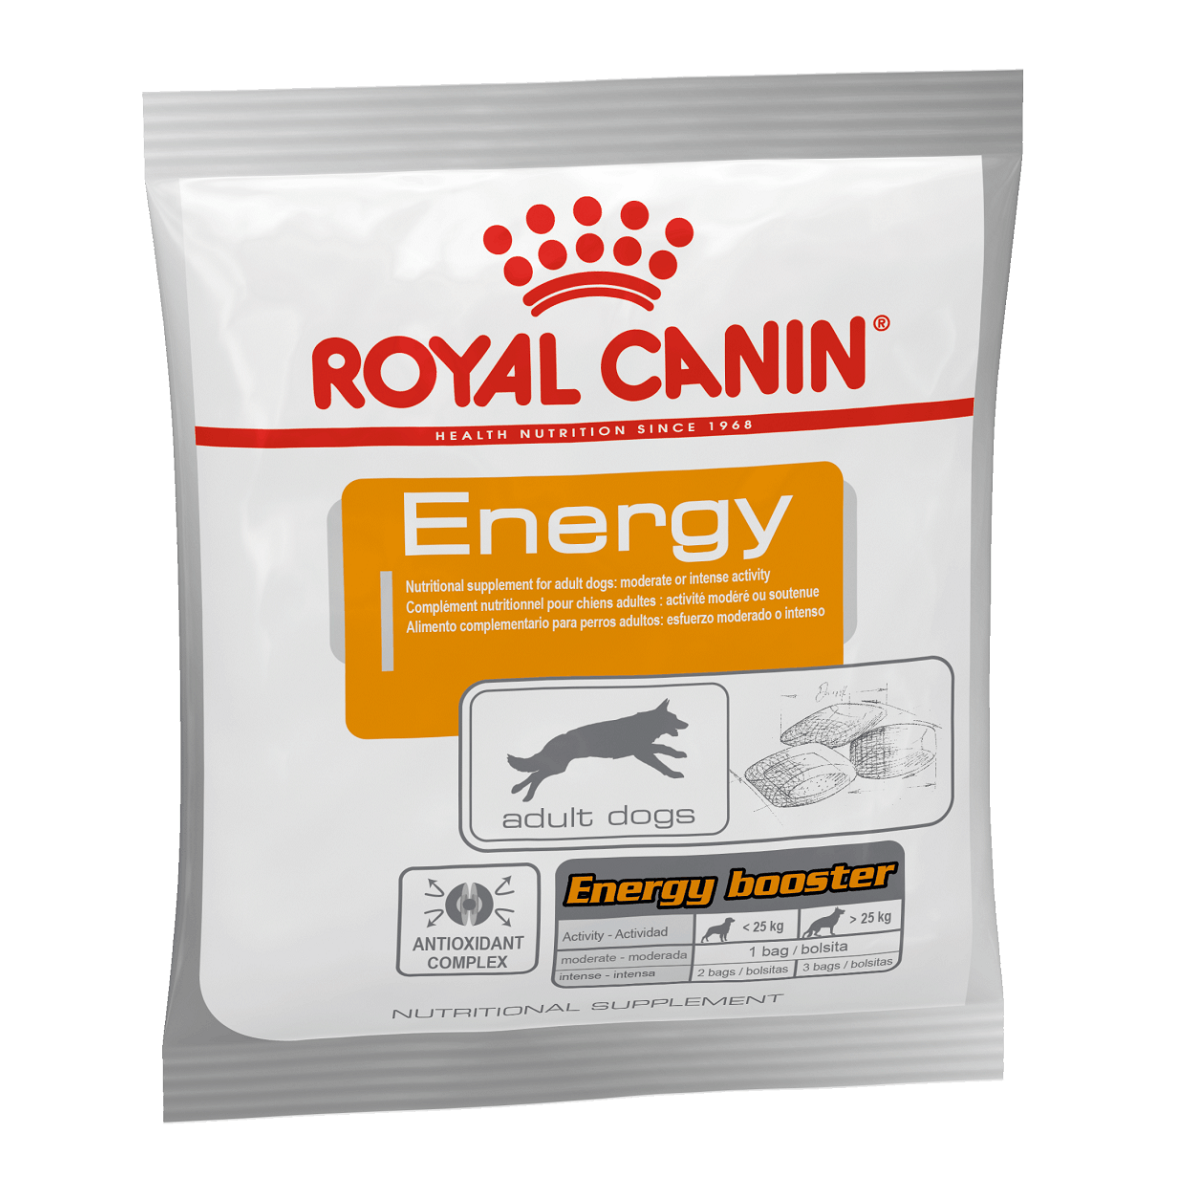 ROYAL CANIN - Energy Dog Treats (30pk)